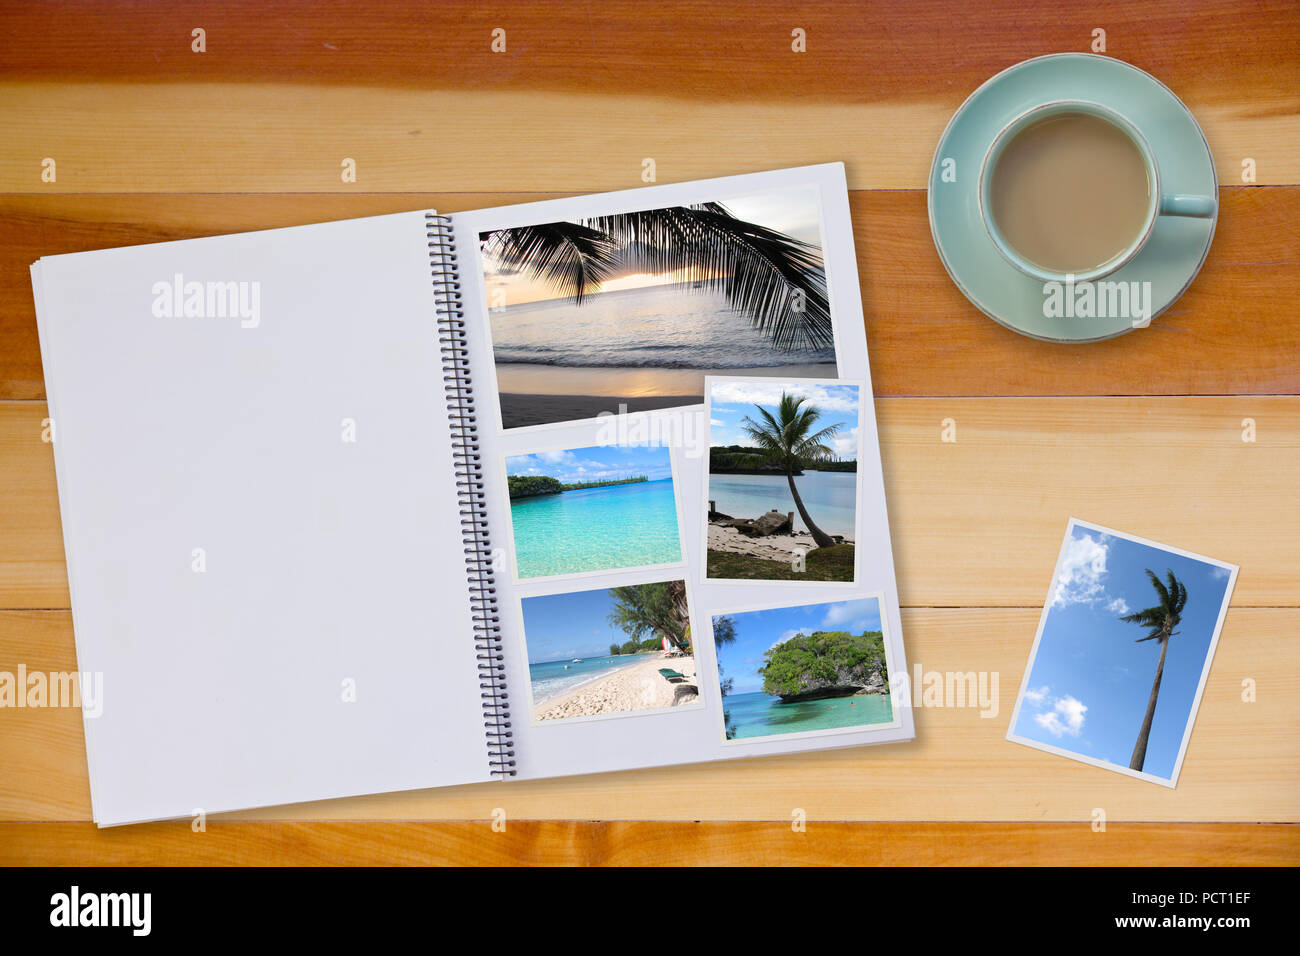 Álbum de fotos sobre un piso de madera mesa con fotos de viajes de playas y café o té en la taza Foto de stock